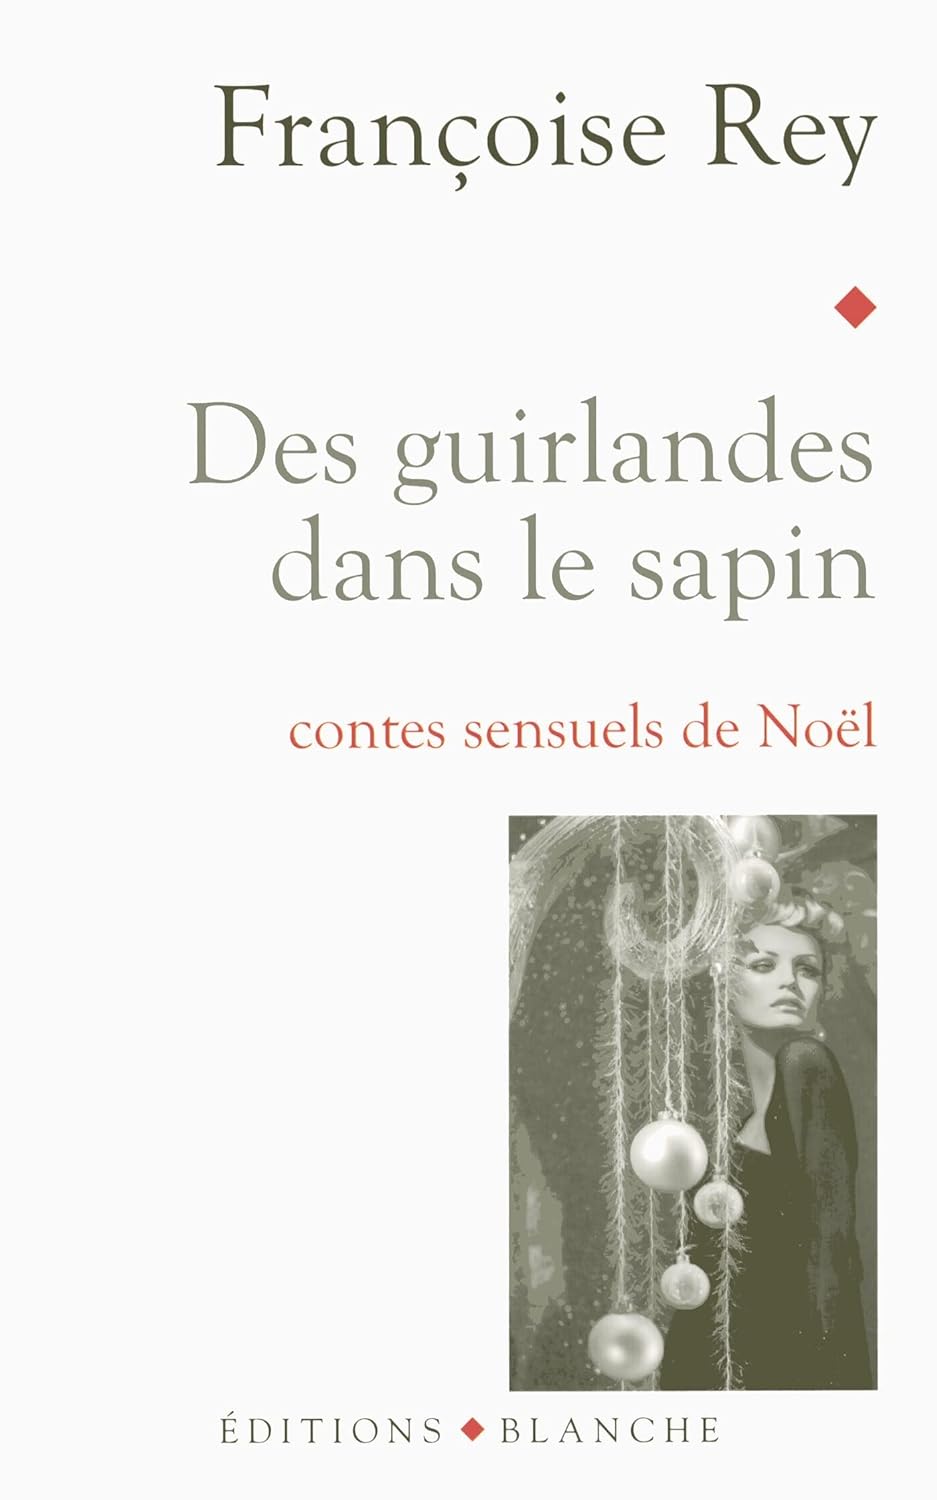 Livre ISBN 2846282080 Des guirlandes dans le sapin : contes sensuels de Noël (Françoise Rey)